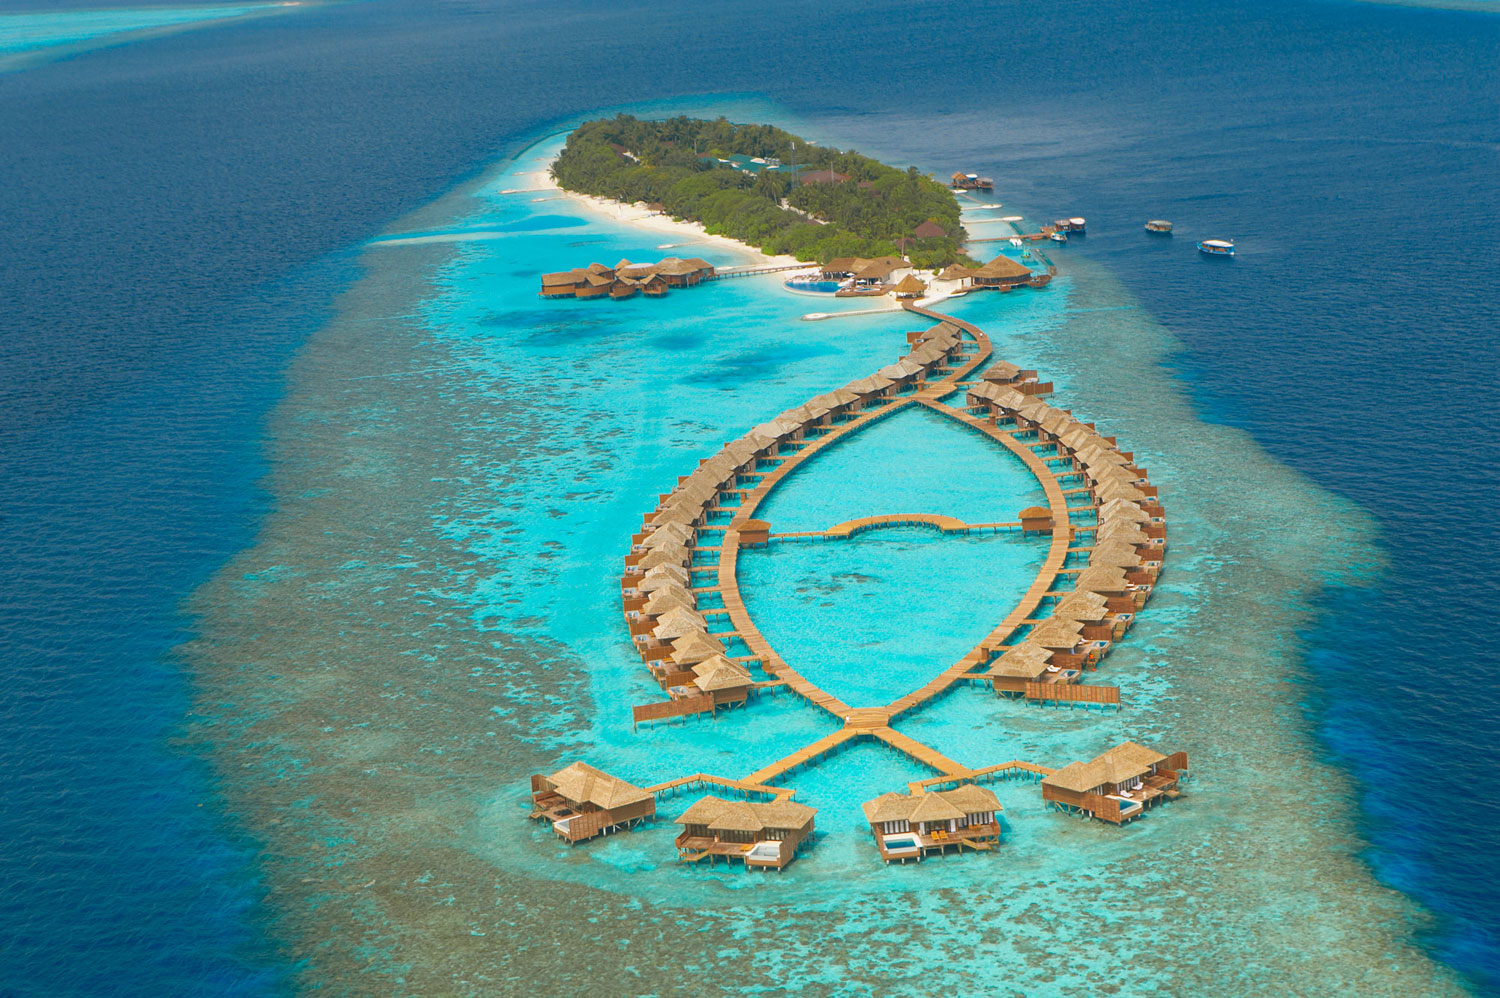 Lily Beach Resort & Spa in Maldives - Architecture & Design